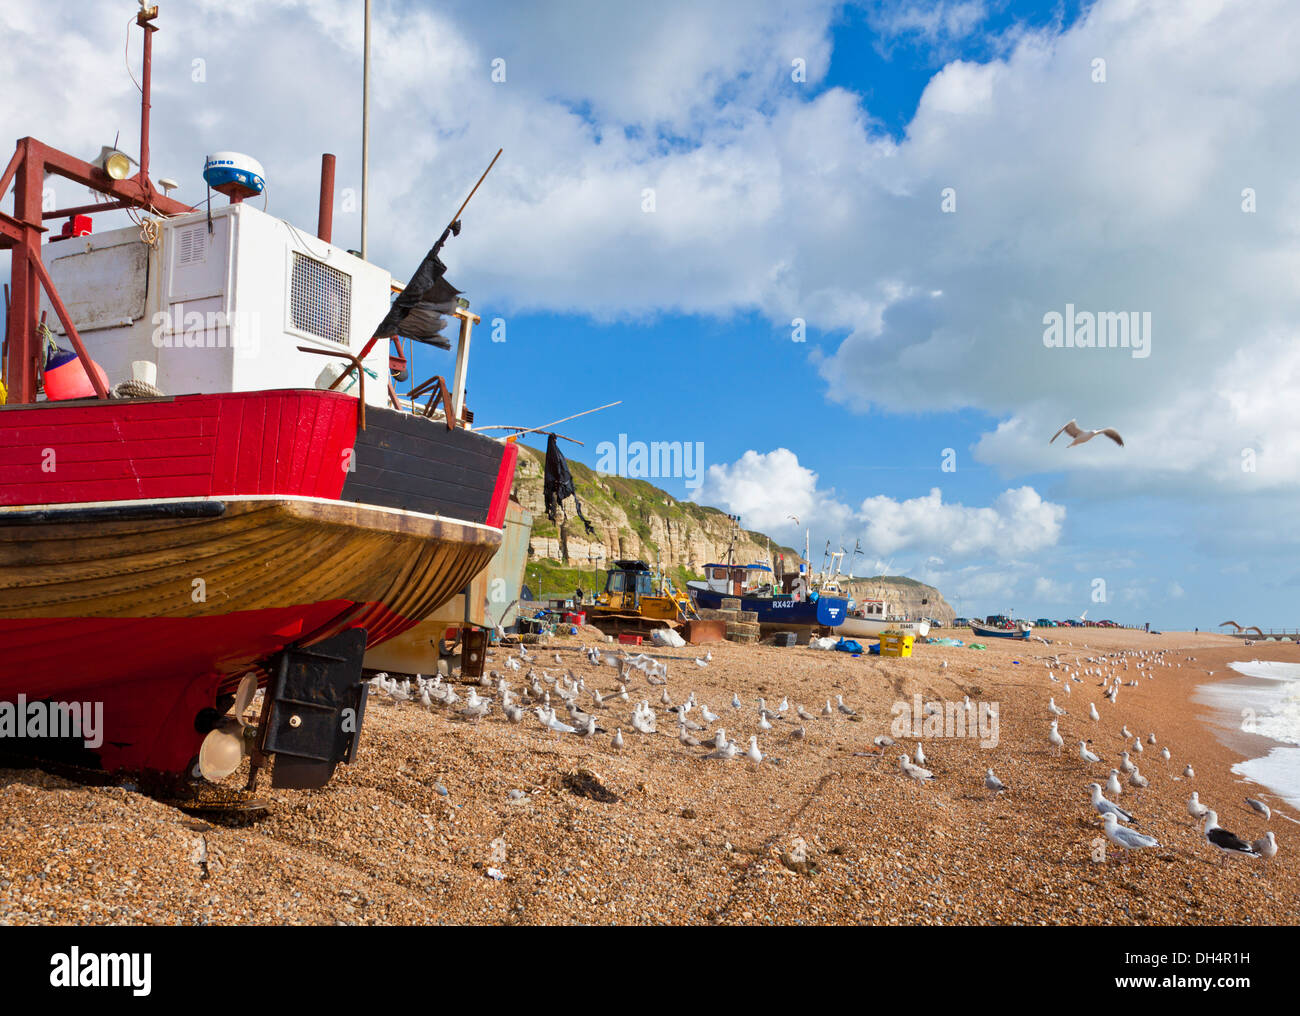 Des bateaux de pêche se sont arrêtés sur la plage à Hastings East Sussex Angleterre GB Royaume-Uni Europe Banque D'Images